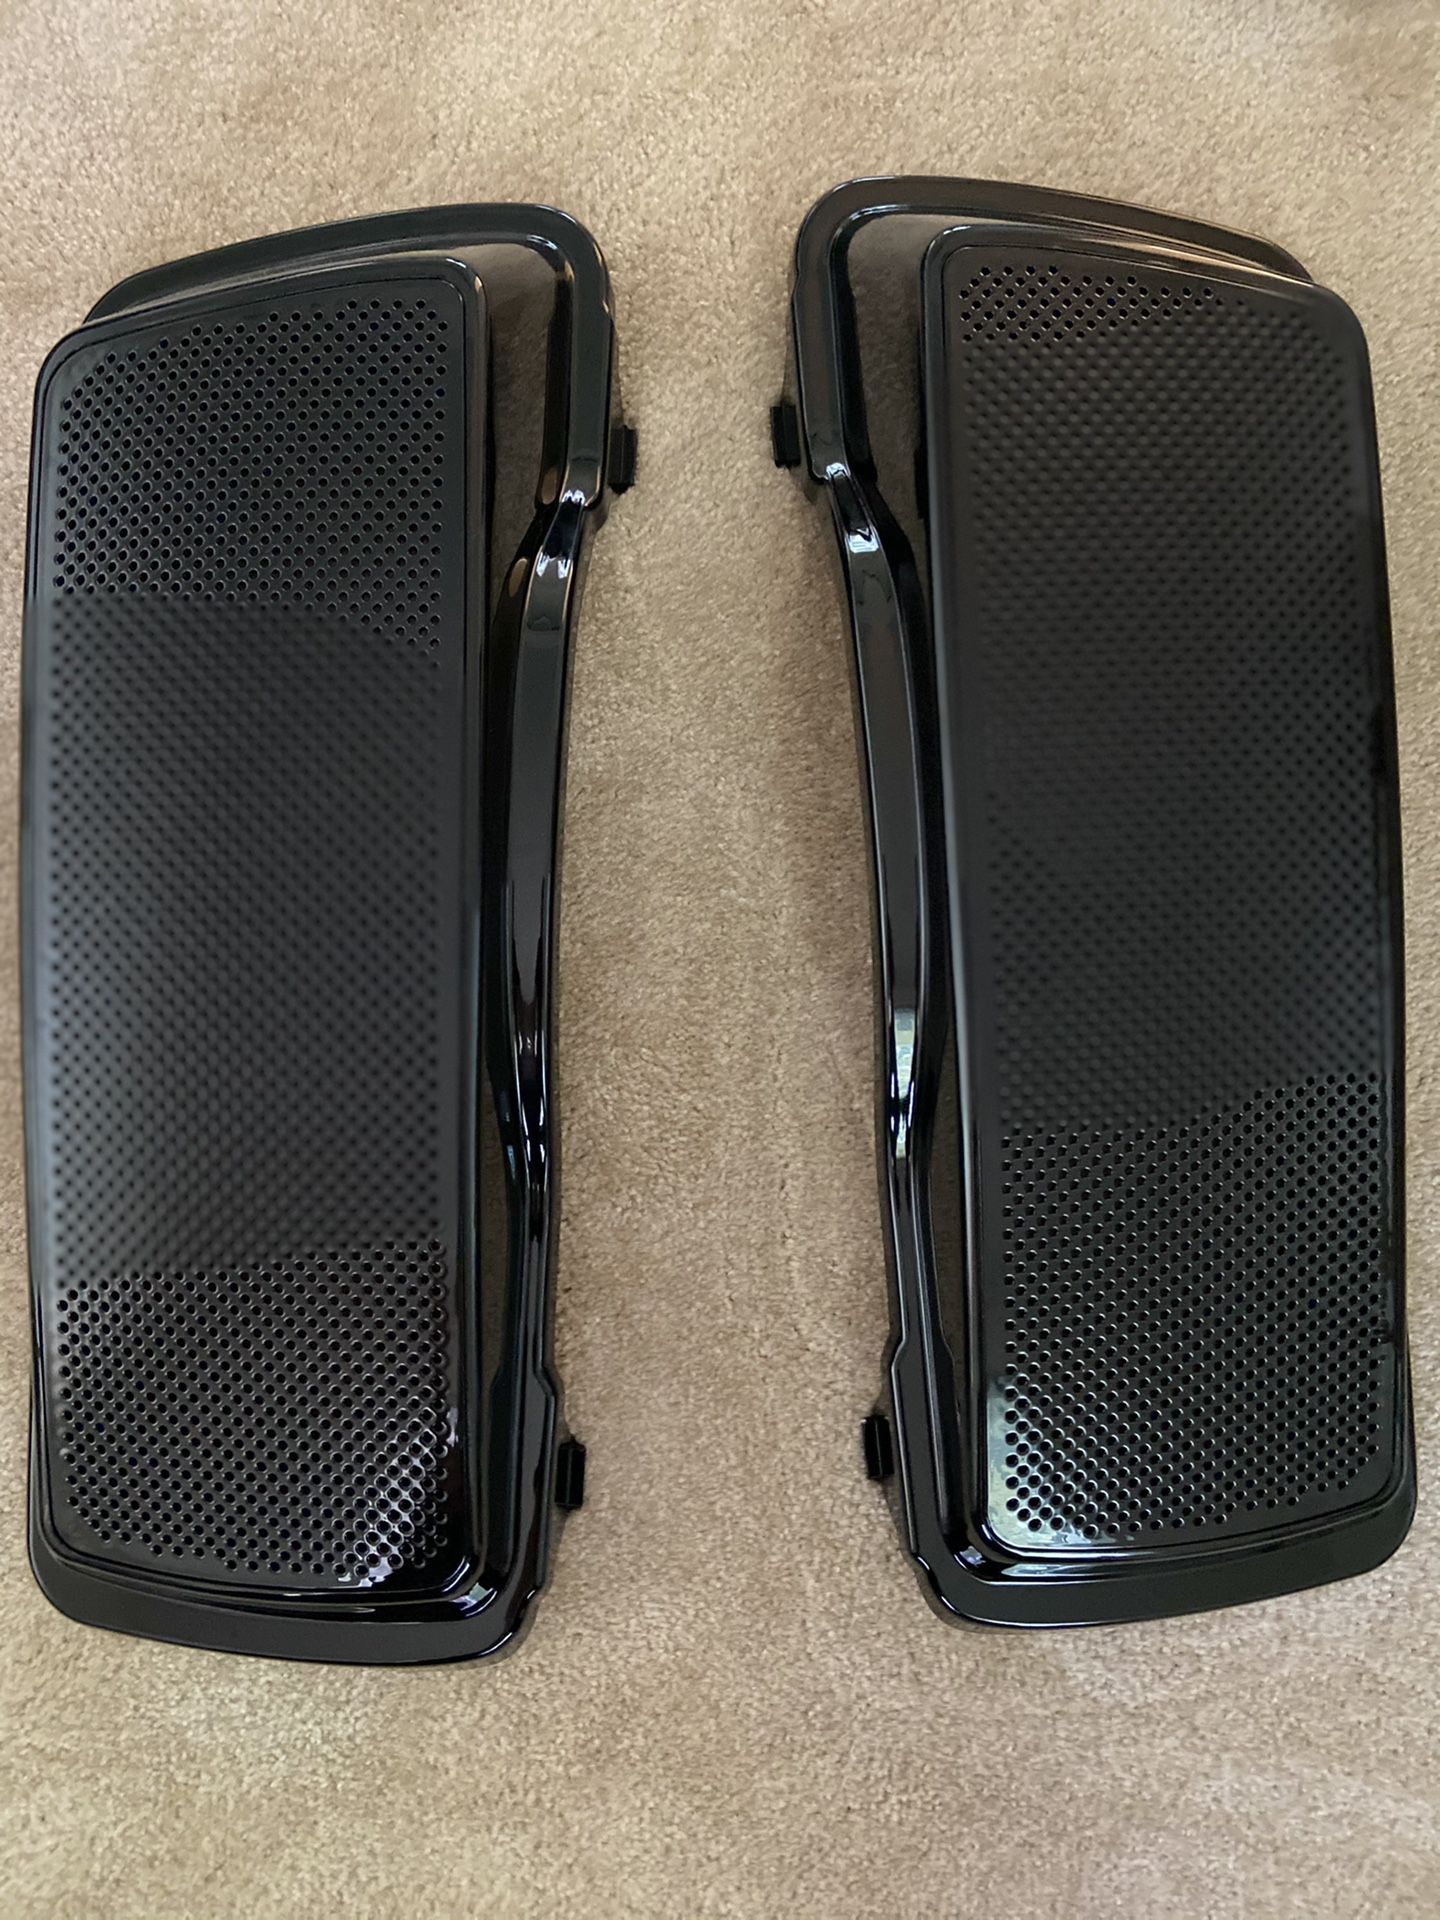 Dual 6x9 speaker lids